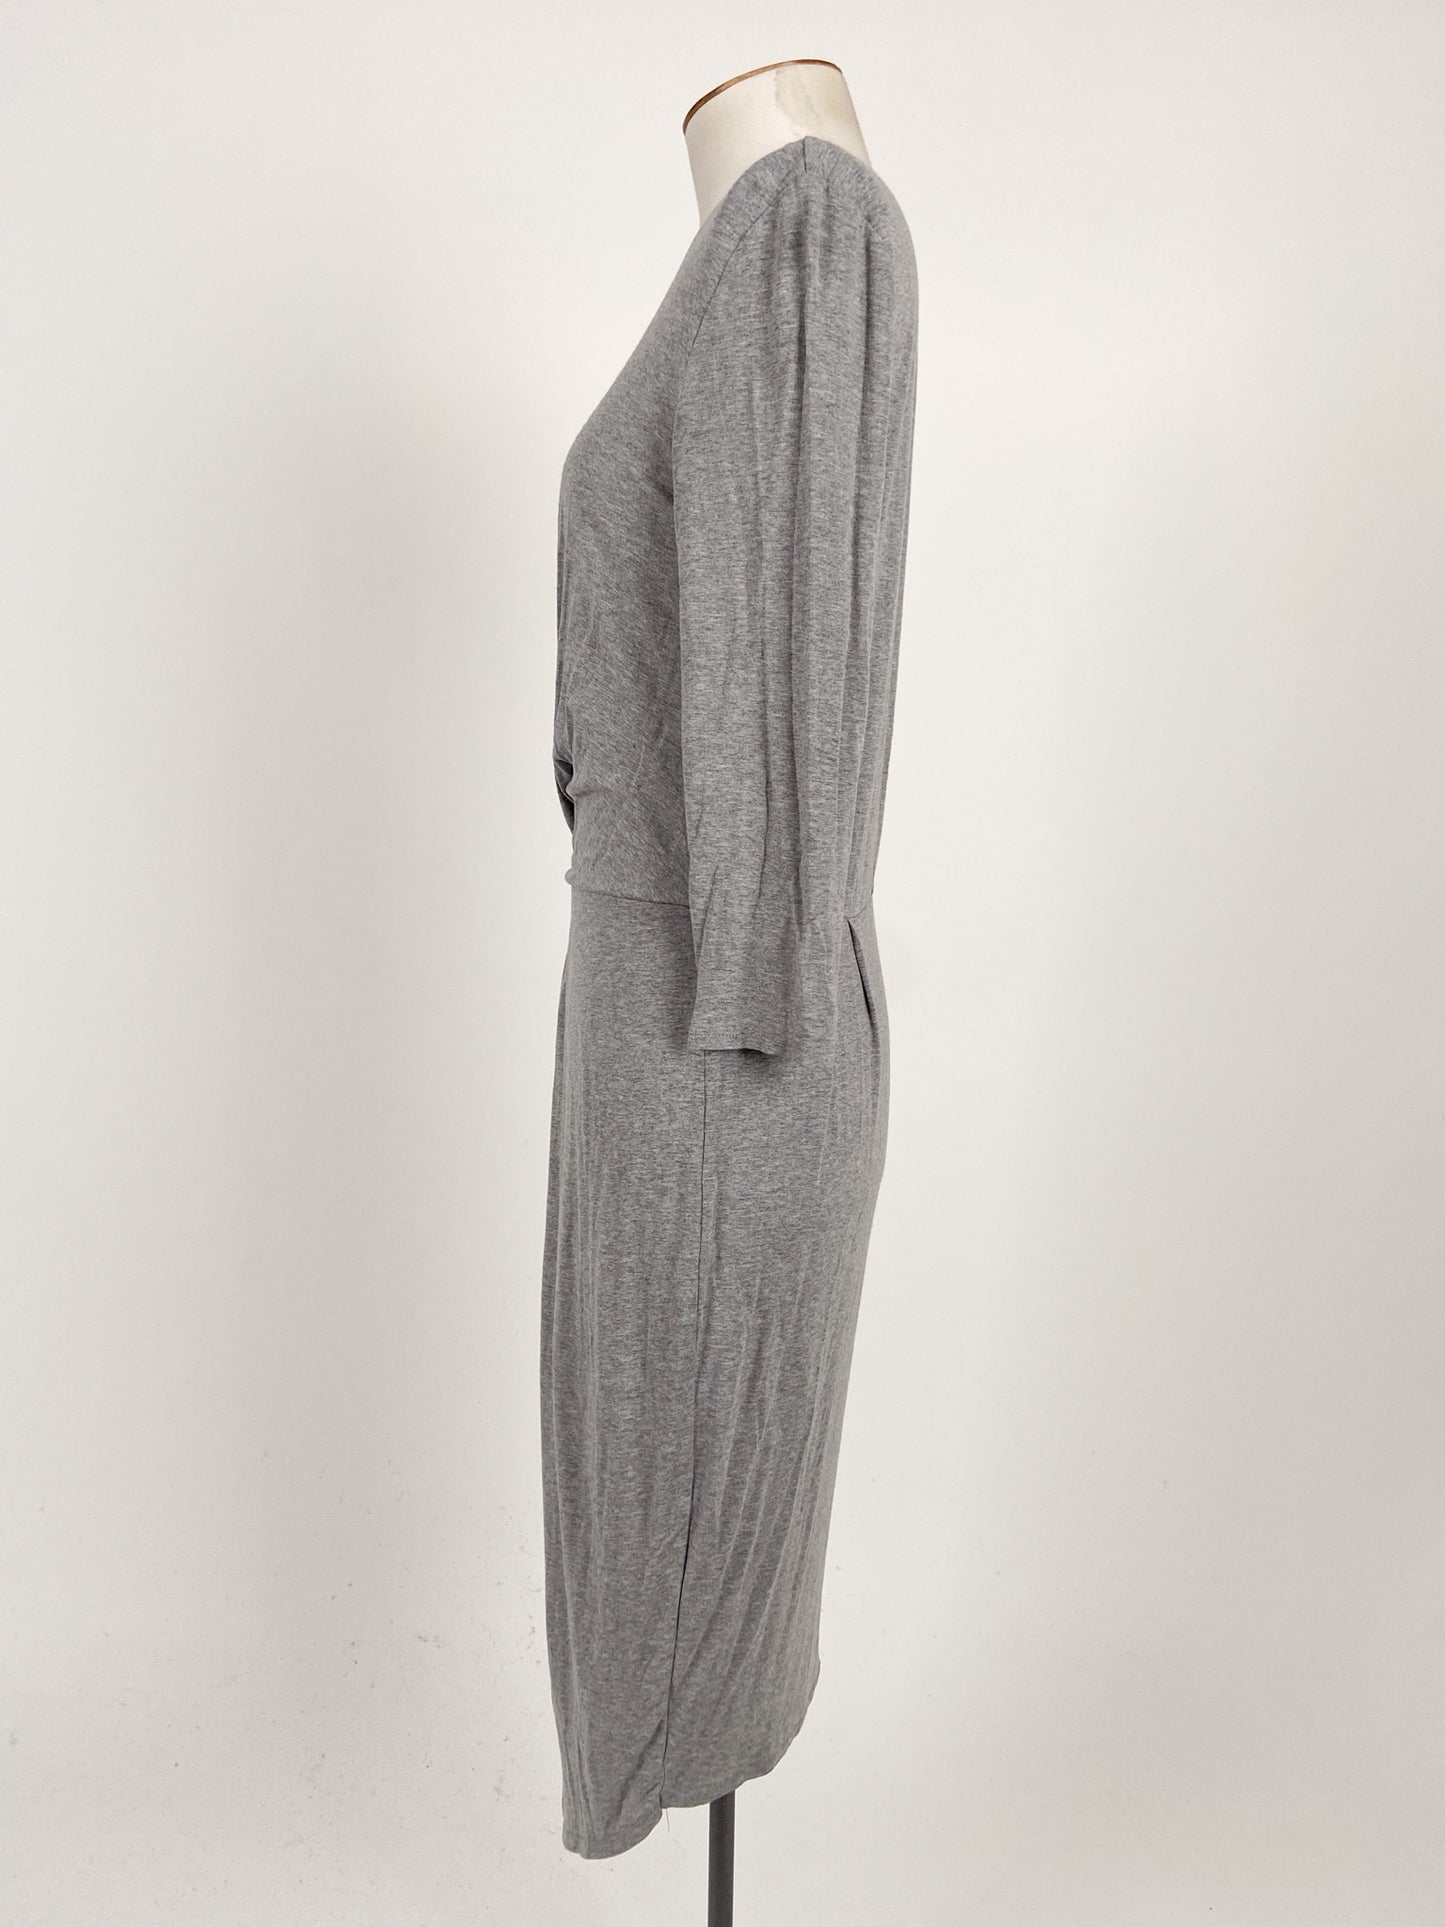 Decjuba | Grey Workwear Dress | Size S